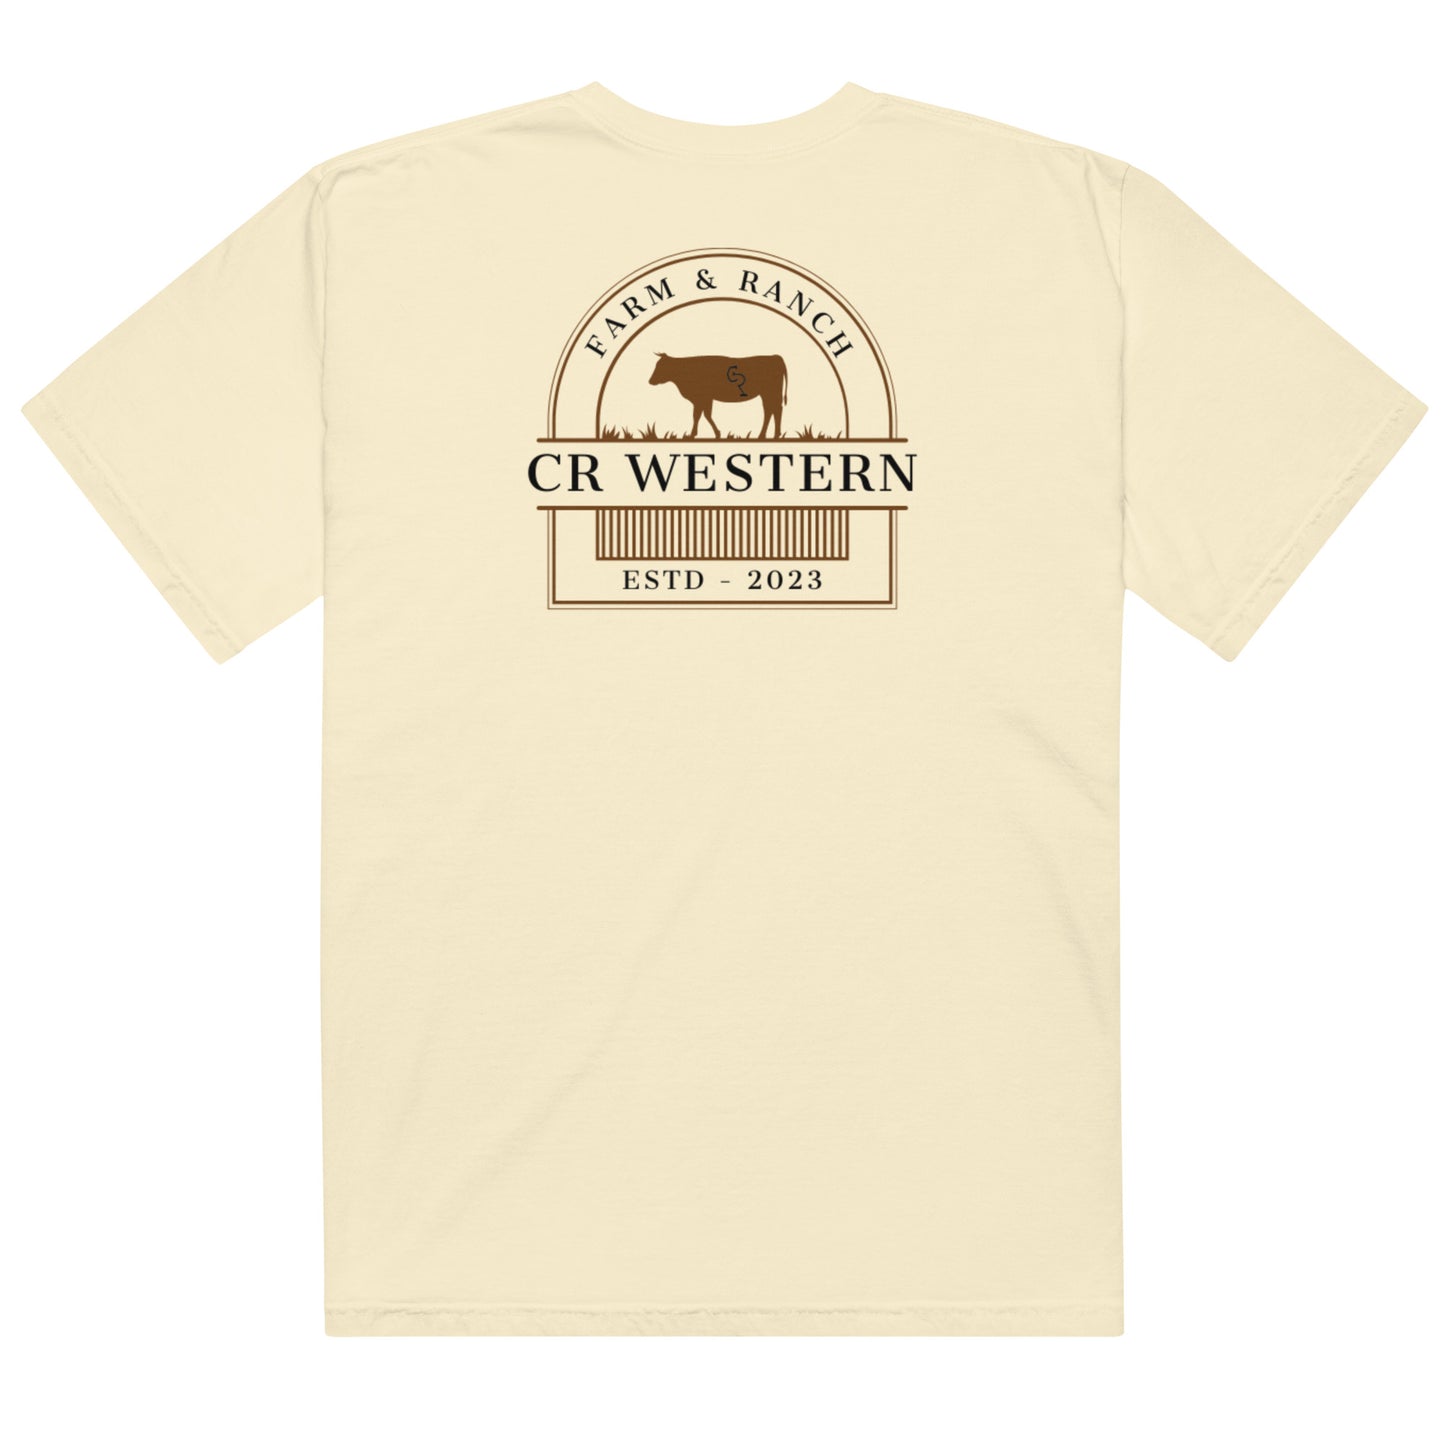 CR Western Farm & Ranch